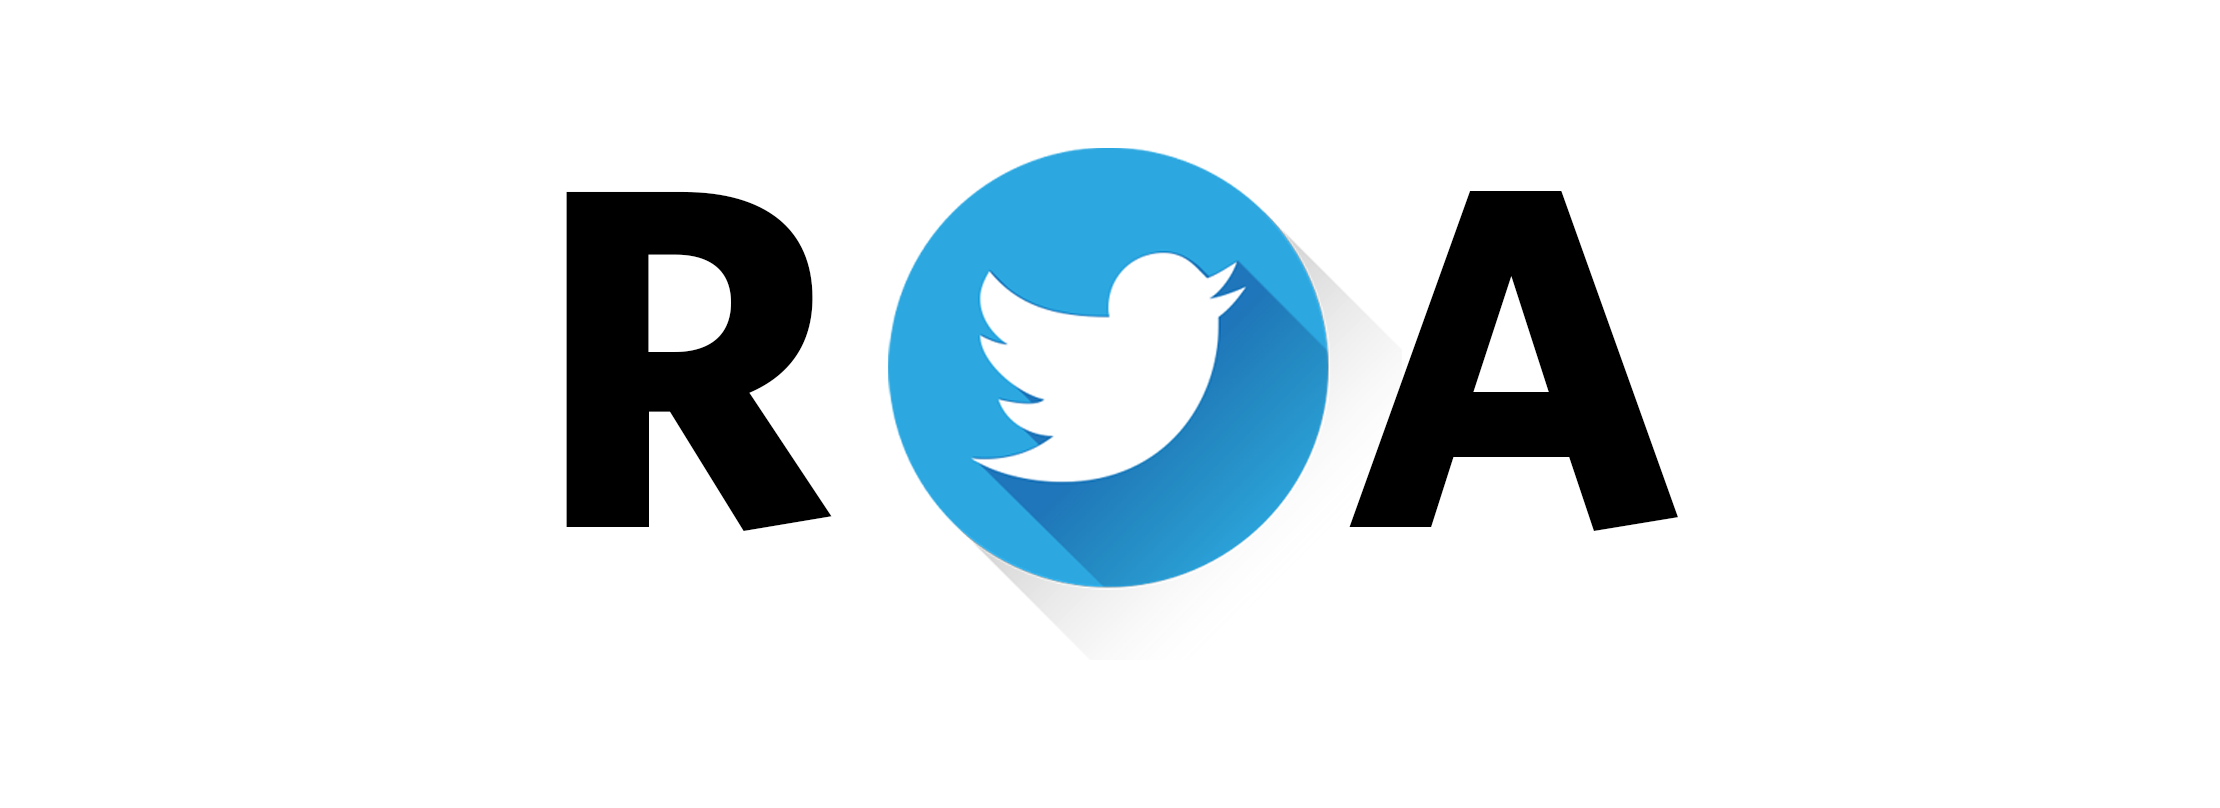 Roa twitter